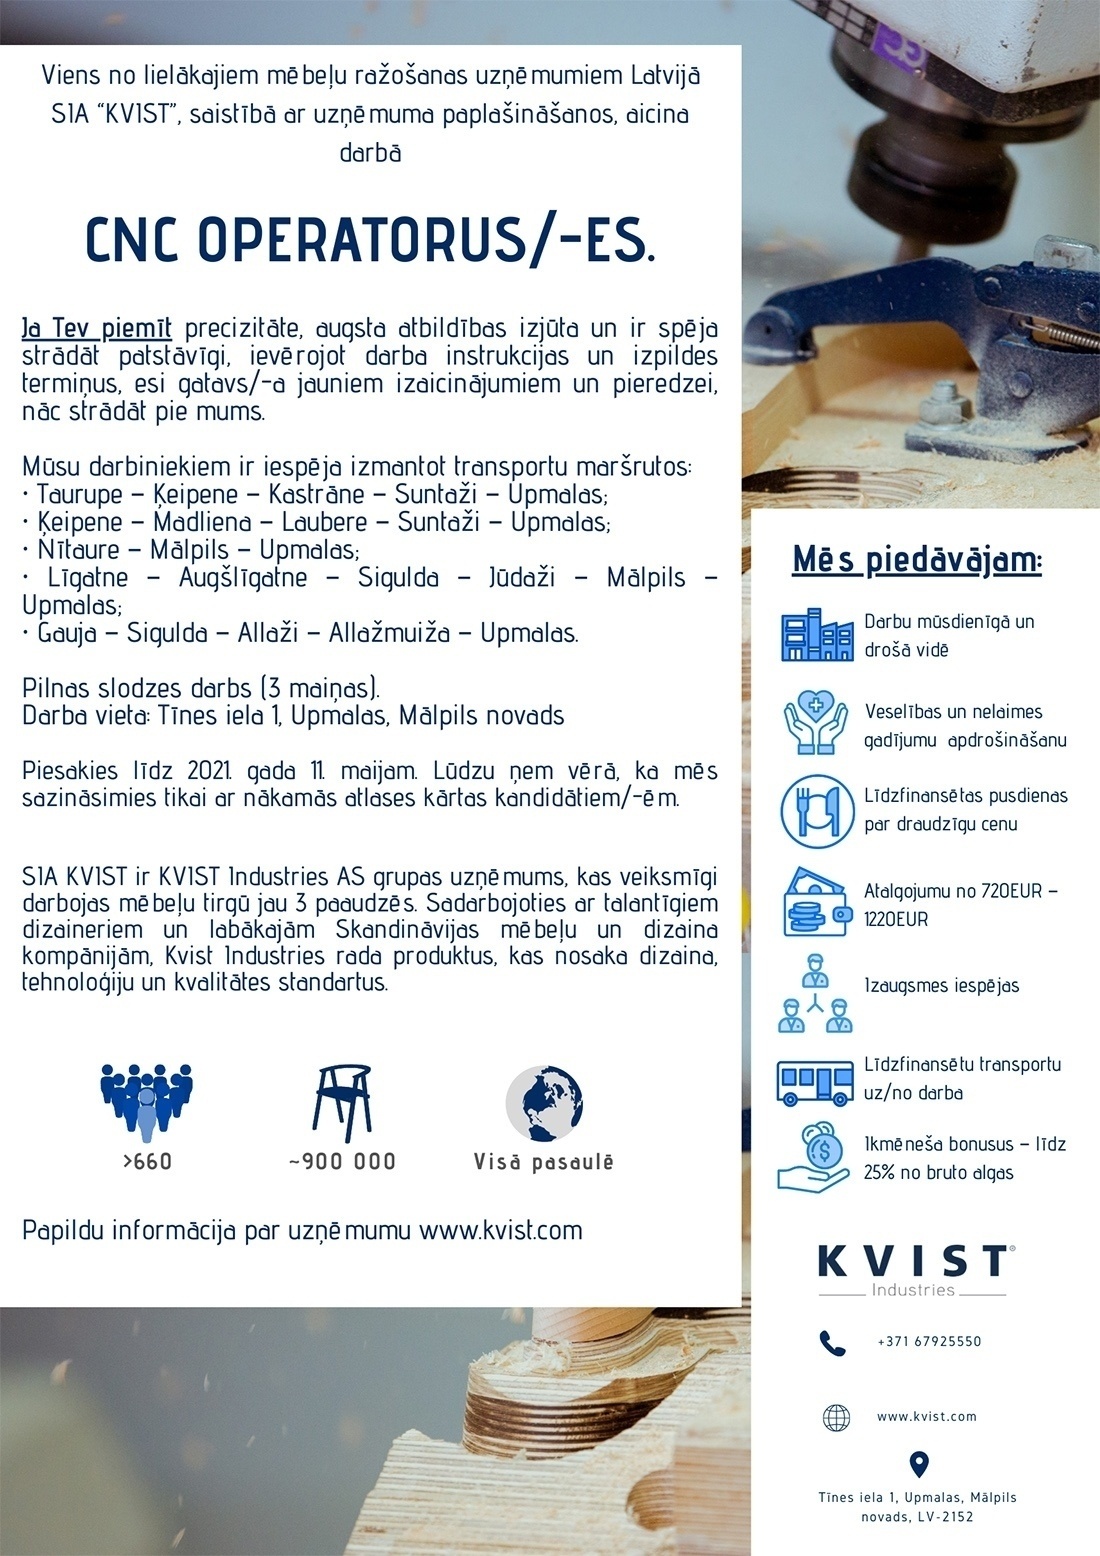 KVIST, SIA CNC operatori/-es